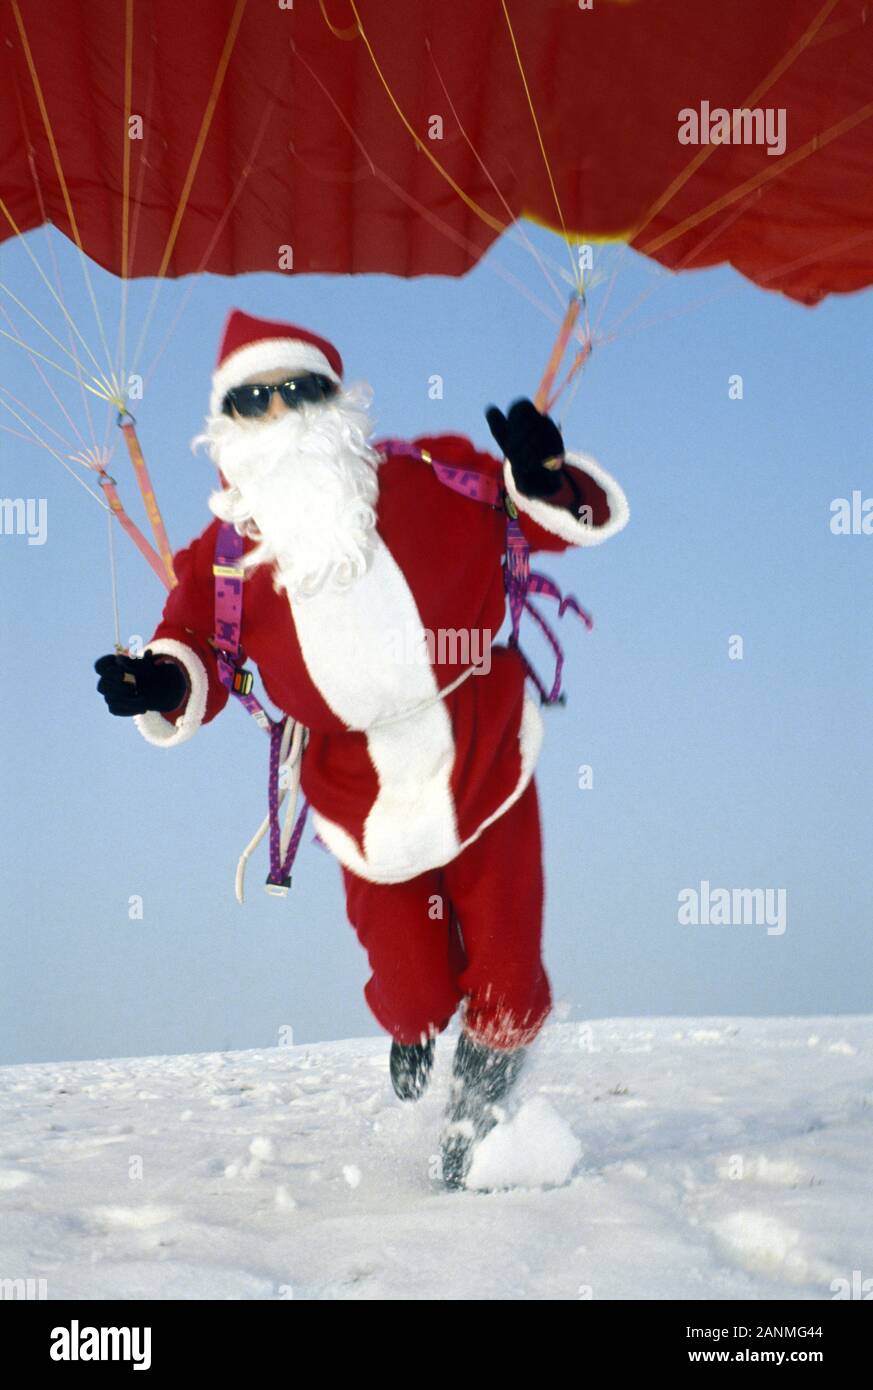 Fliegender Weihnachtsmann - Flying Santa Claus Stock Photo